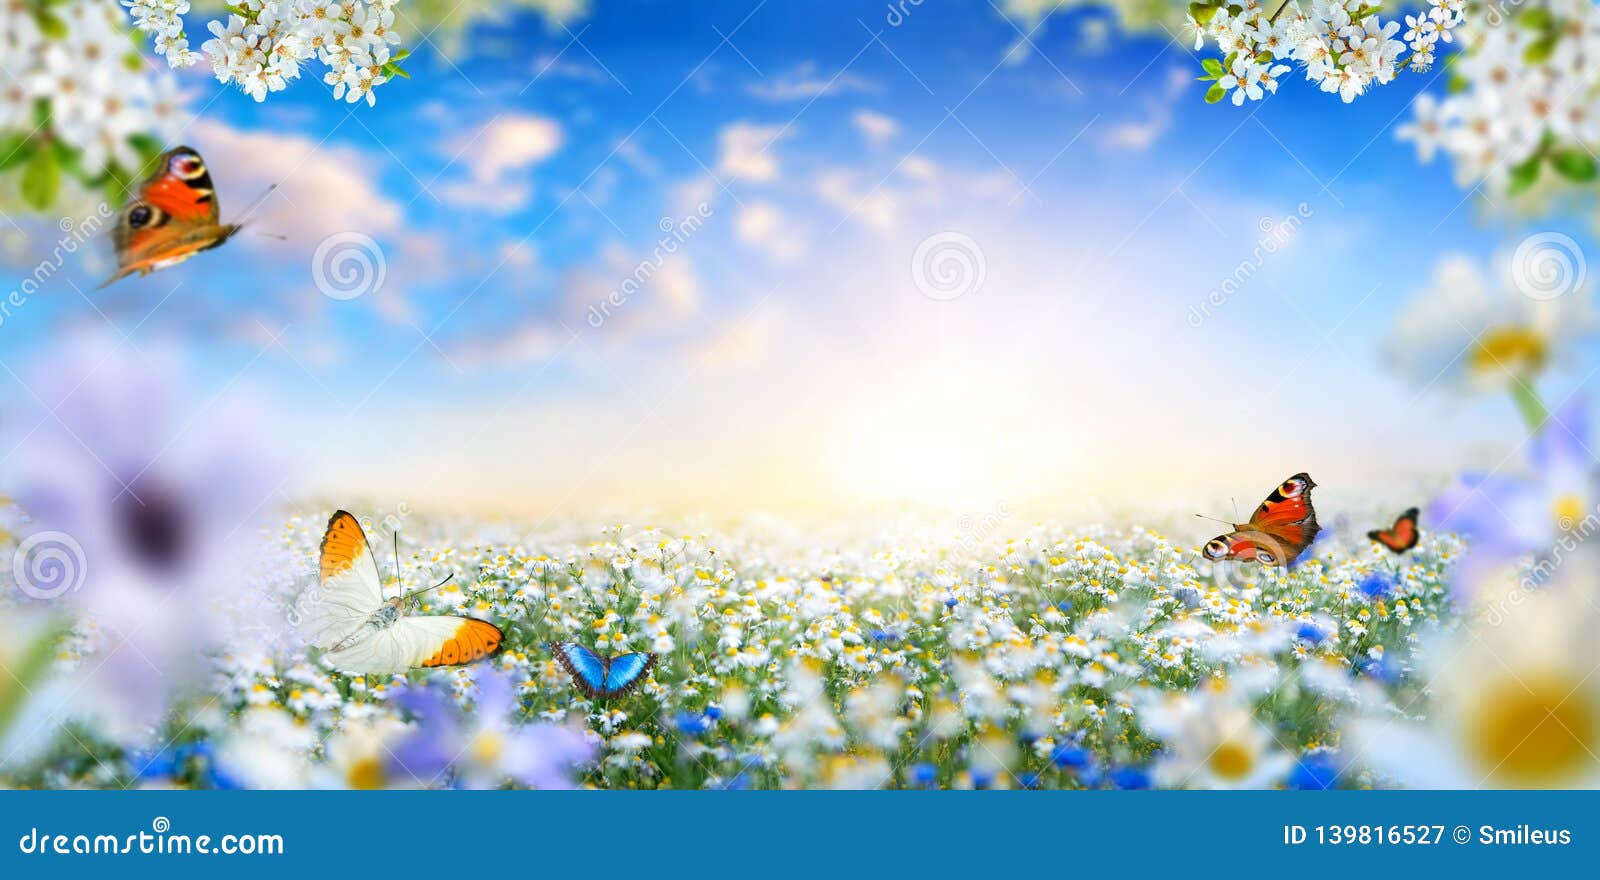 理想国幻想与花和蝴蝶的春天风景库存图片 图片包括有理想国幻想与花和蝴蝶的春天风景